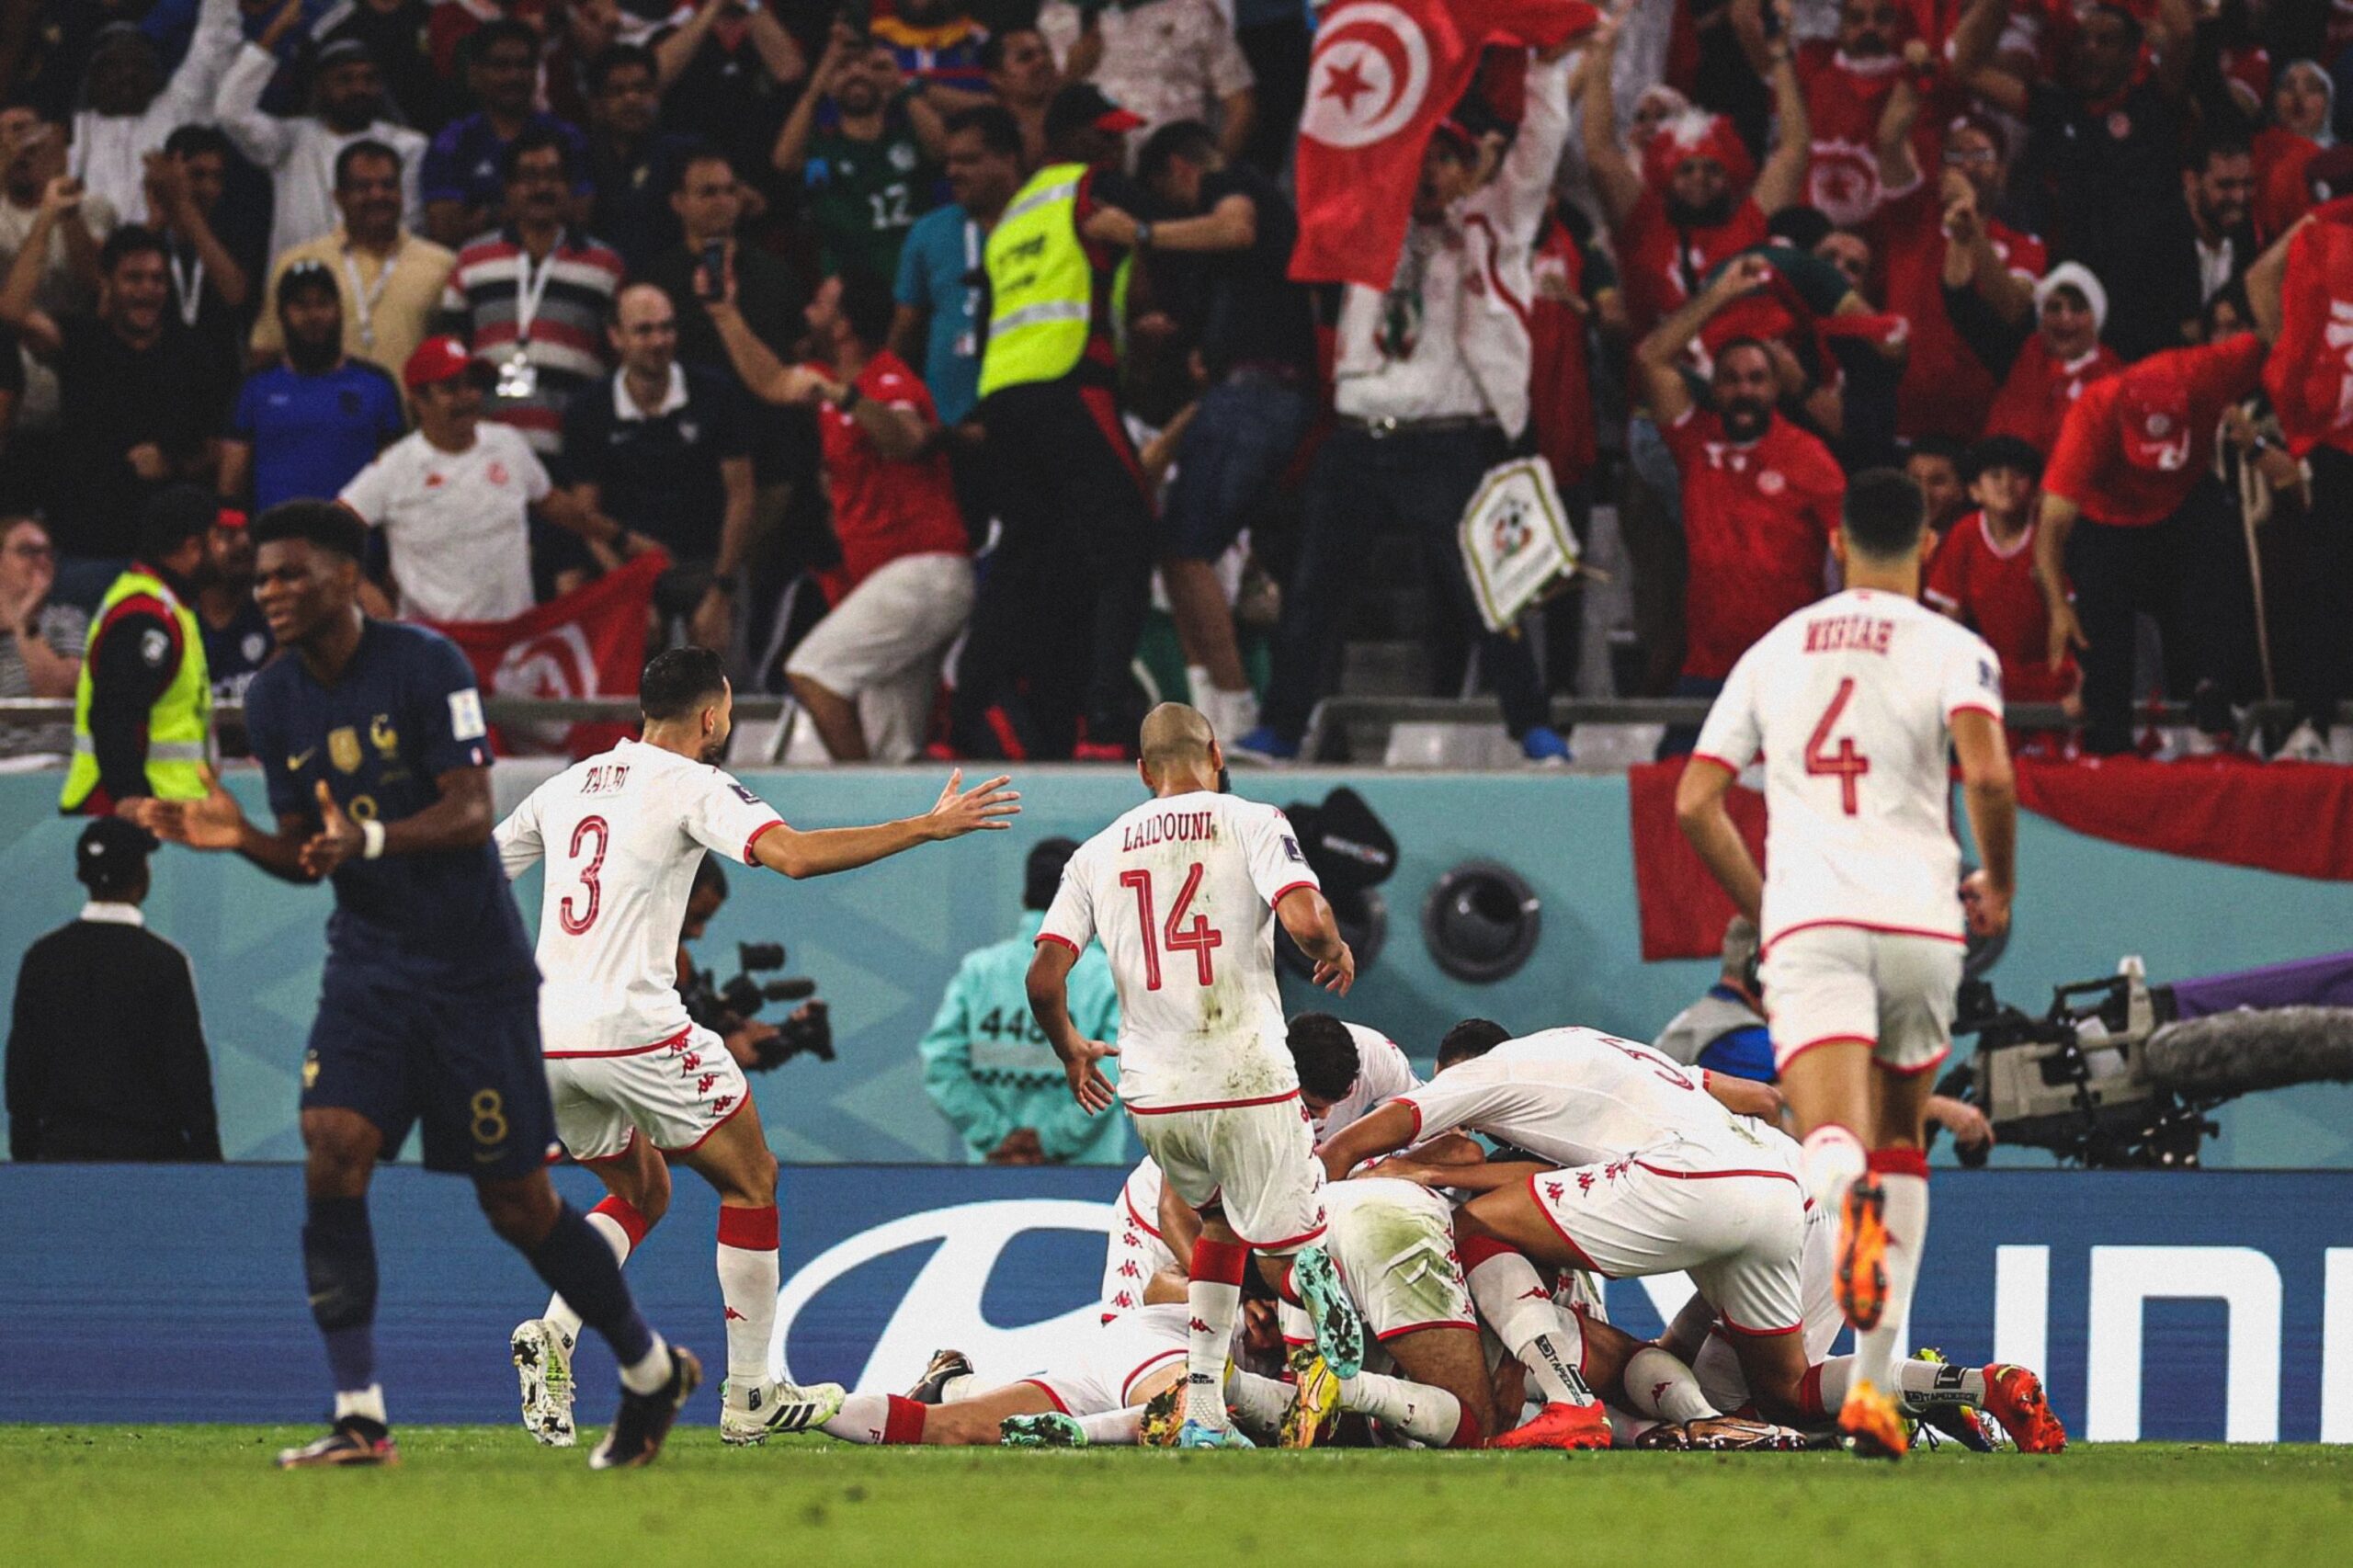 تونس تهزم فرنسا بهدف نظيف وتودع كأس العالم قطر 2022.